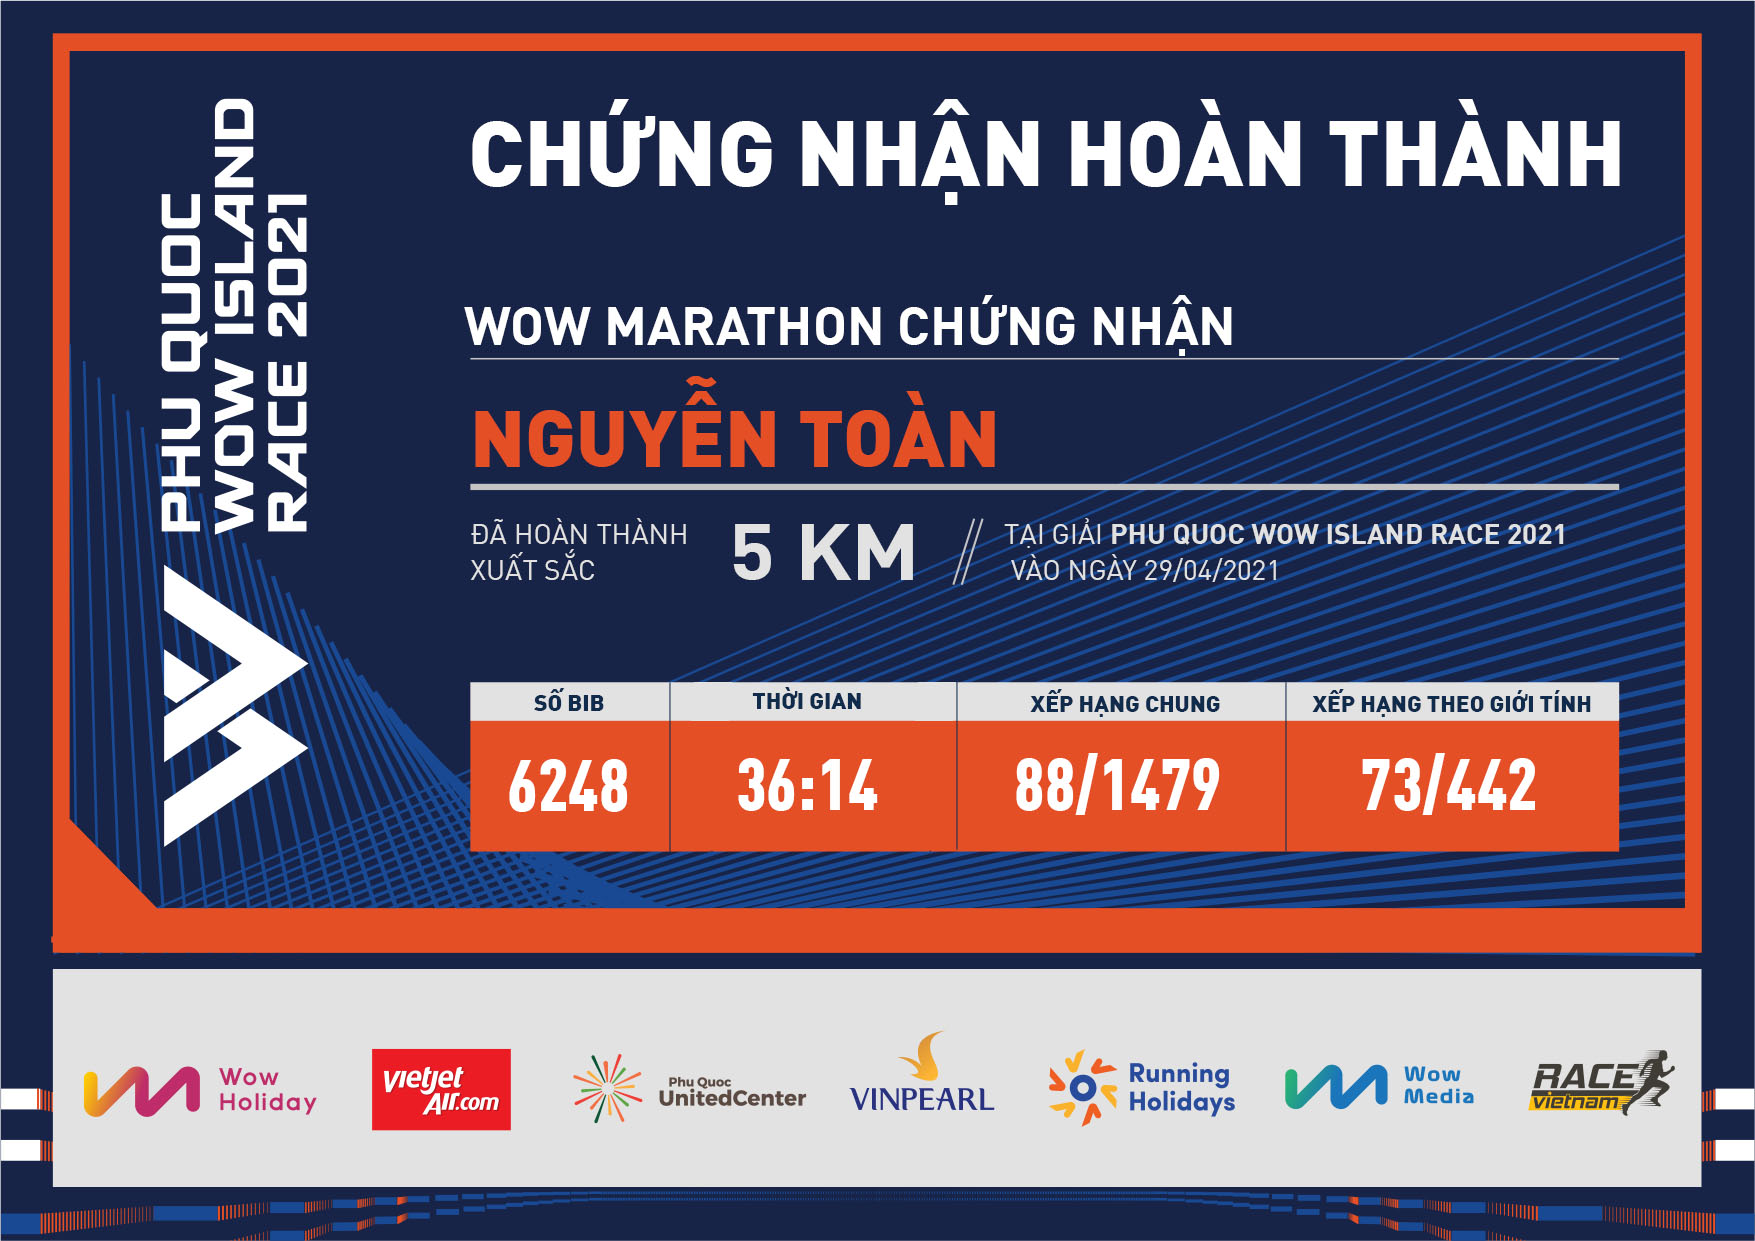 6248 - Nguyễn Toàn